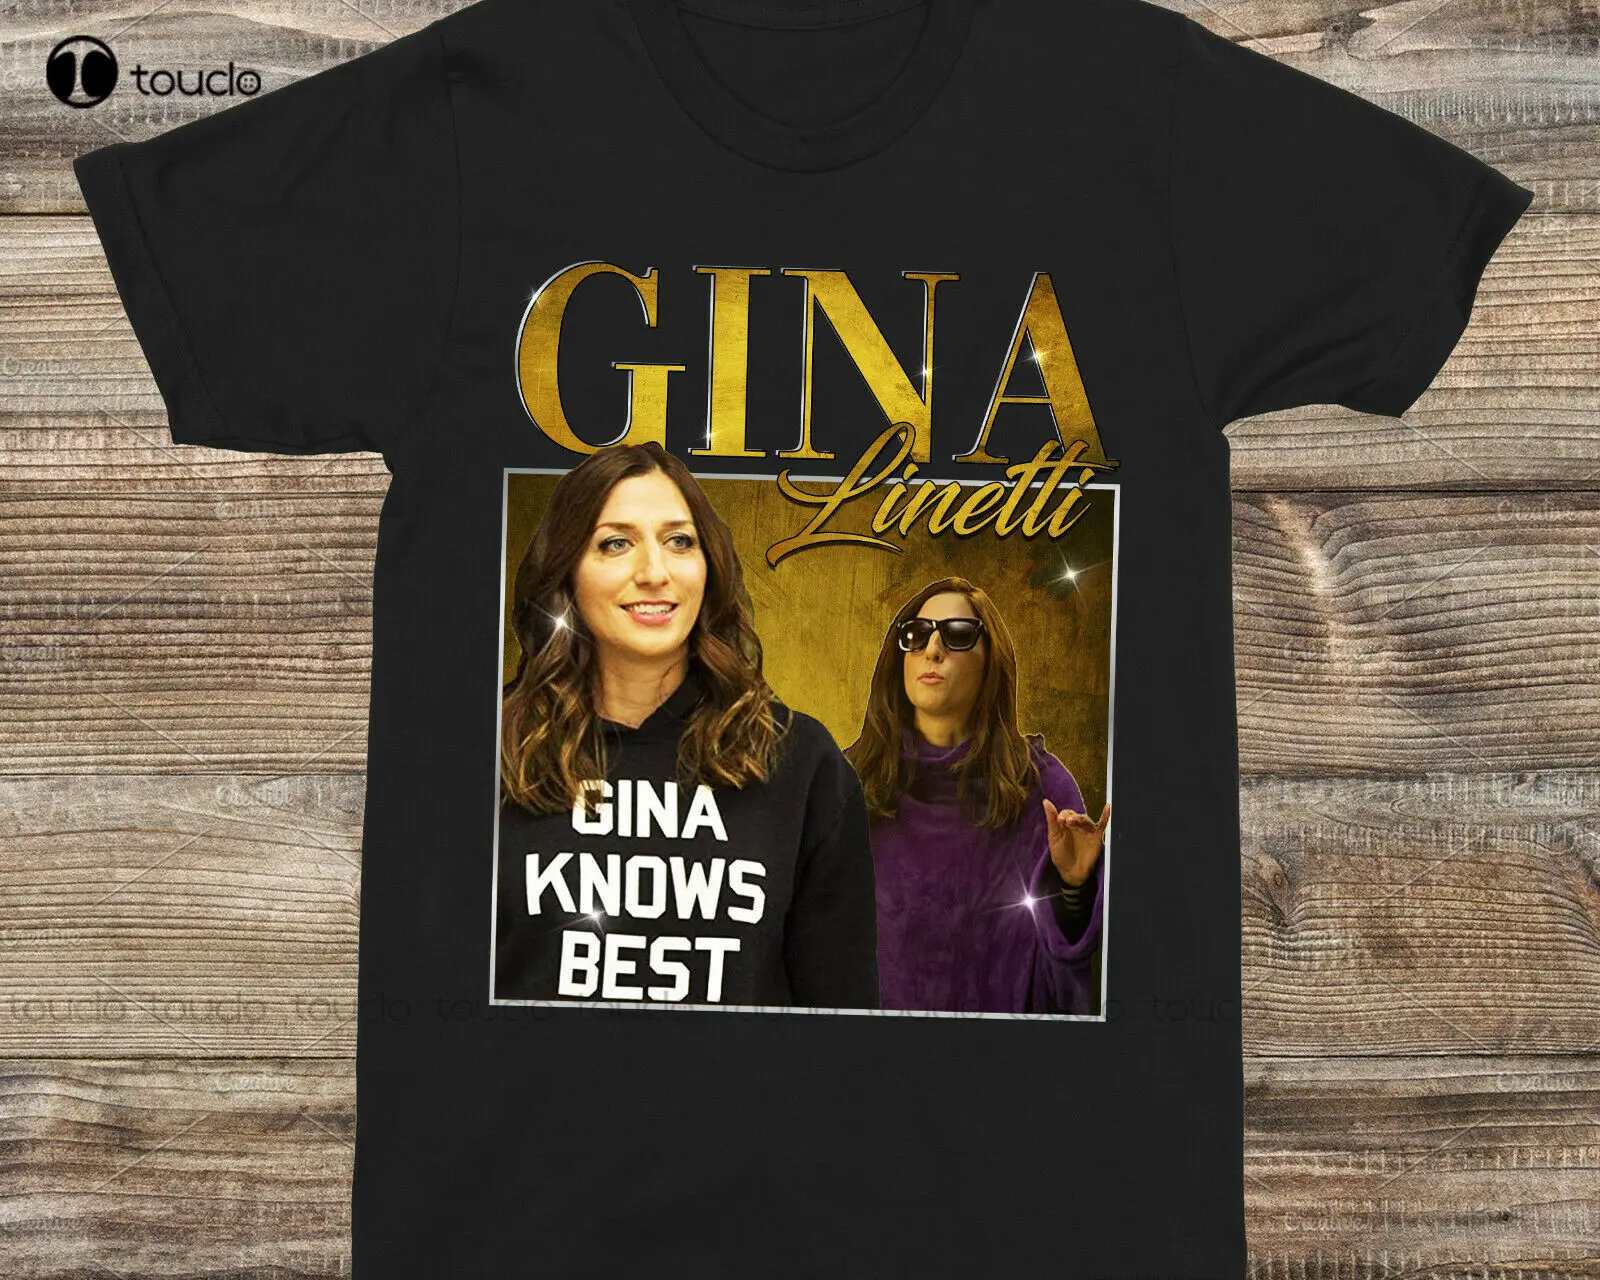 Gina-Linetti Brooklyn 99 Chelsea Peretti 90S T-Shirt Hawaiian Shirts Cotton Tee Shirts Xs-5Xl Streetwear Tshirt New Popular